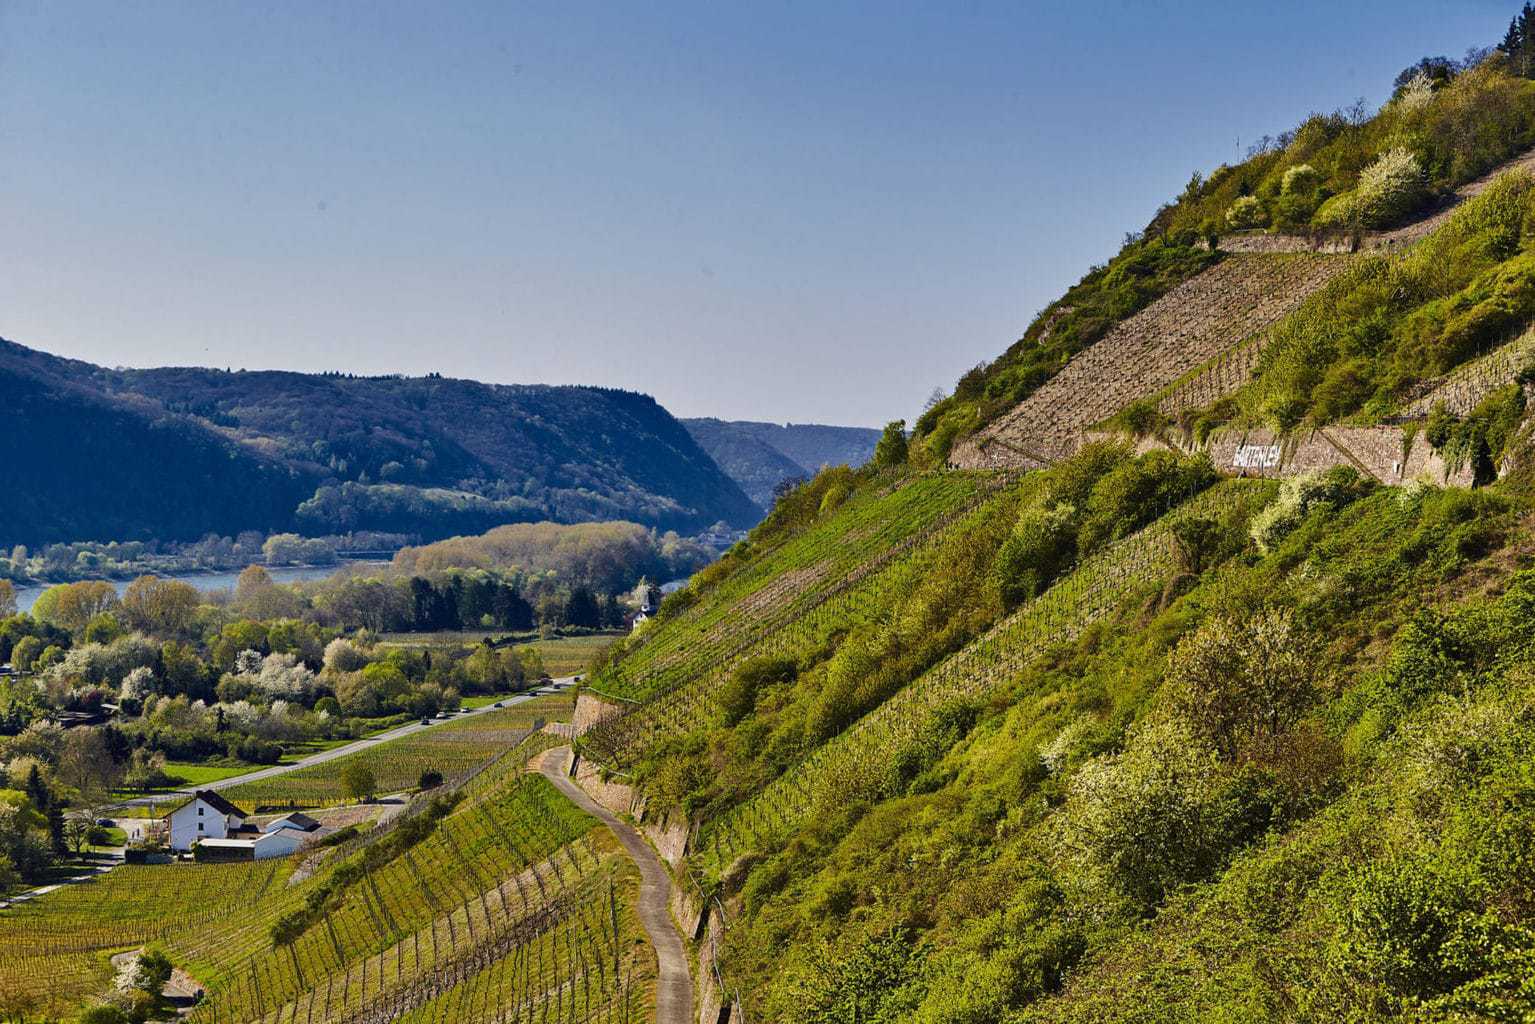 Wandelpad in de wijnbergen van Bad Hönningen